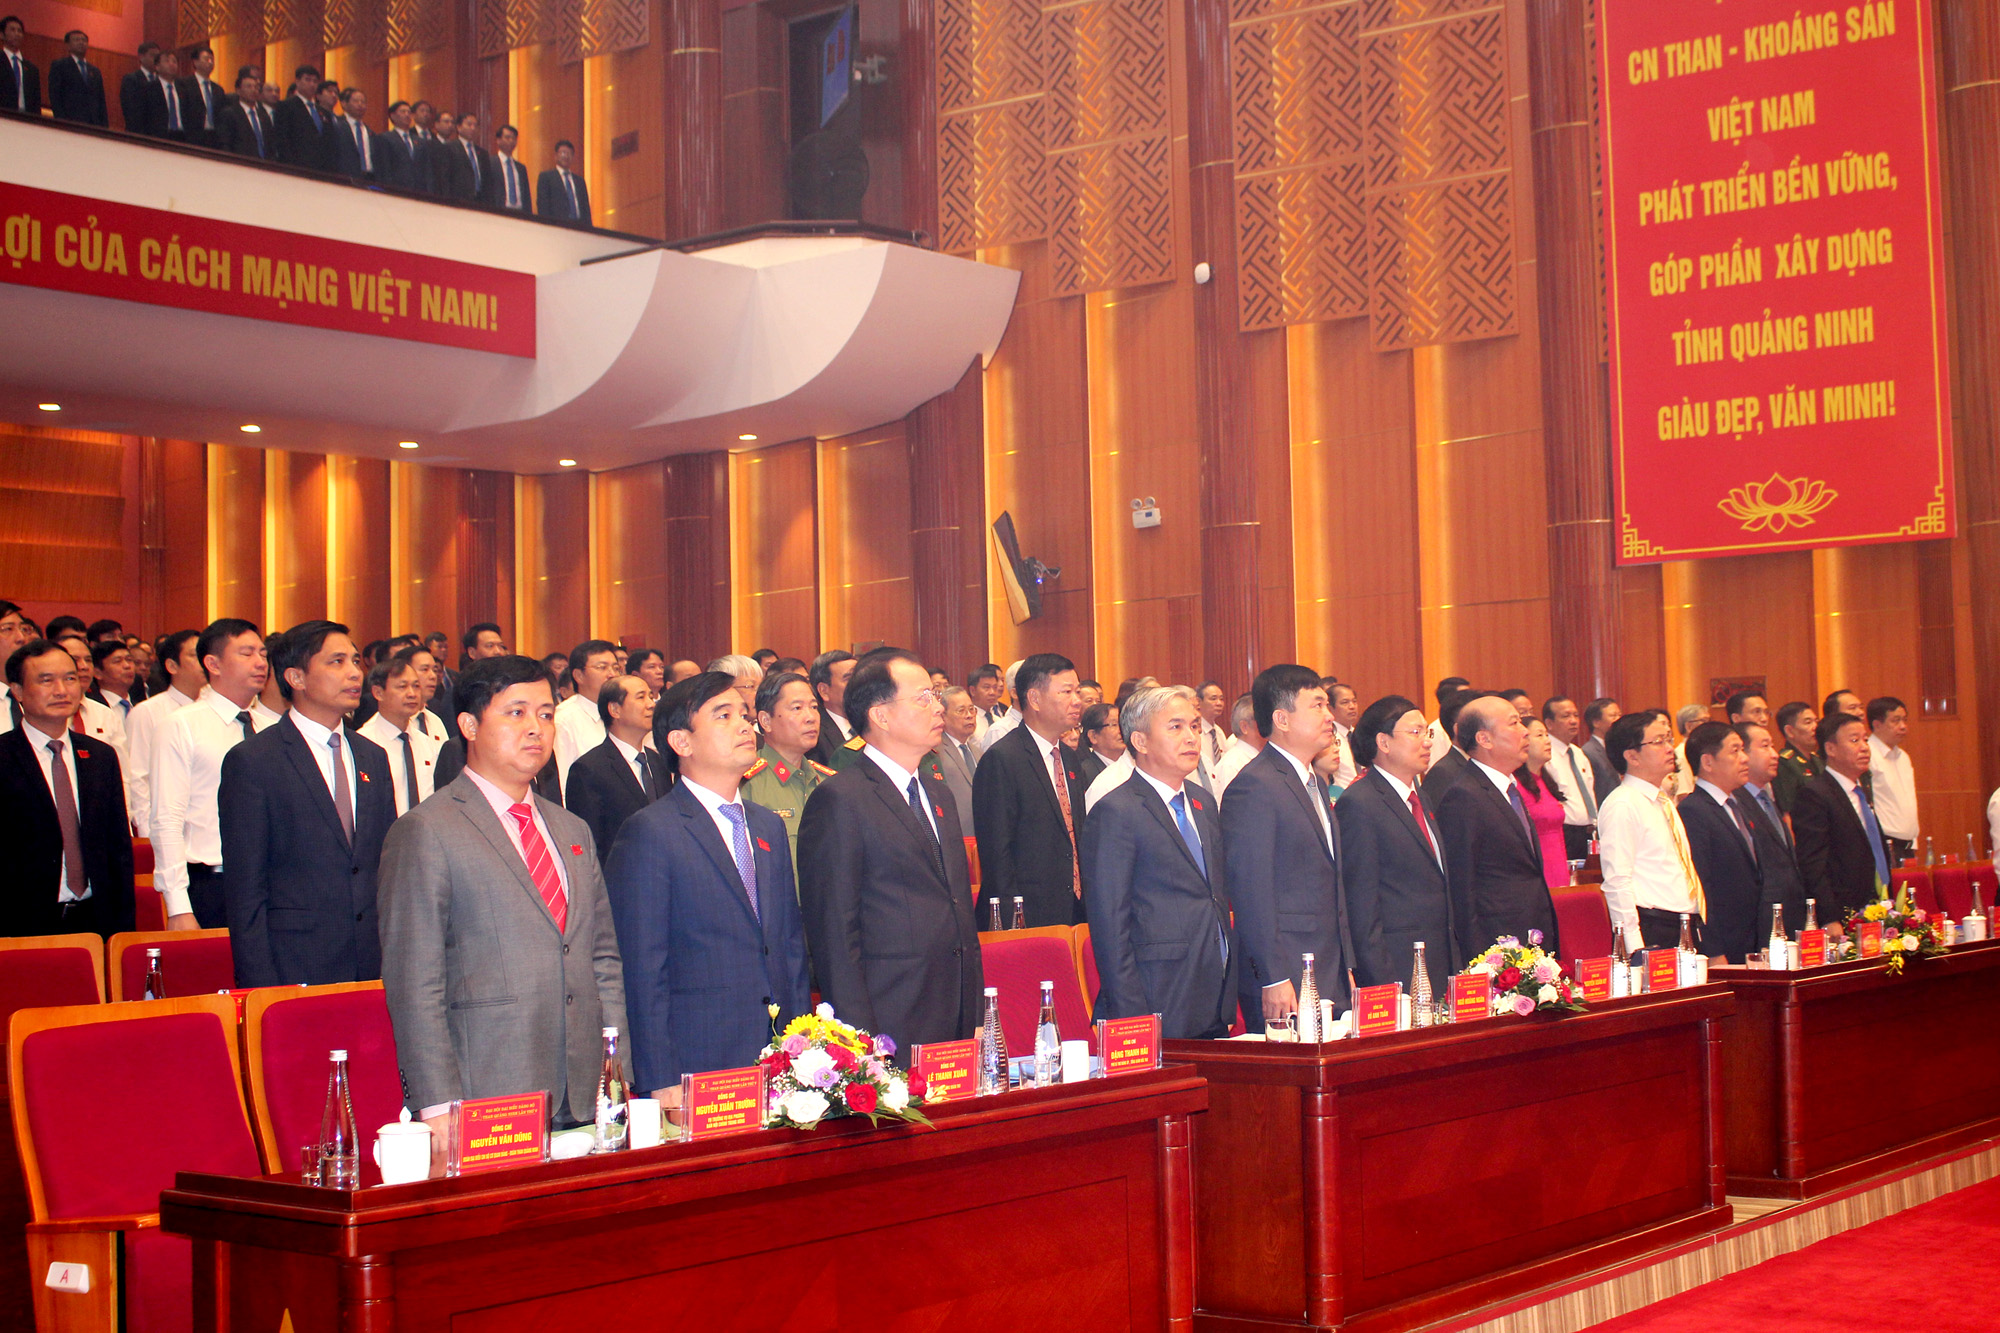 Các đại biểu dự Đại hội Đại biểu Đảng bộ Than Quảng Ninh lần thứ V, nhiệm kỳ 2020-2025 làm lễ chào cờ